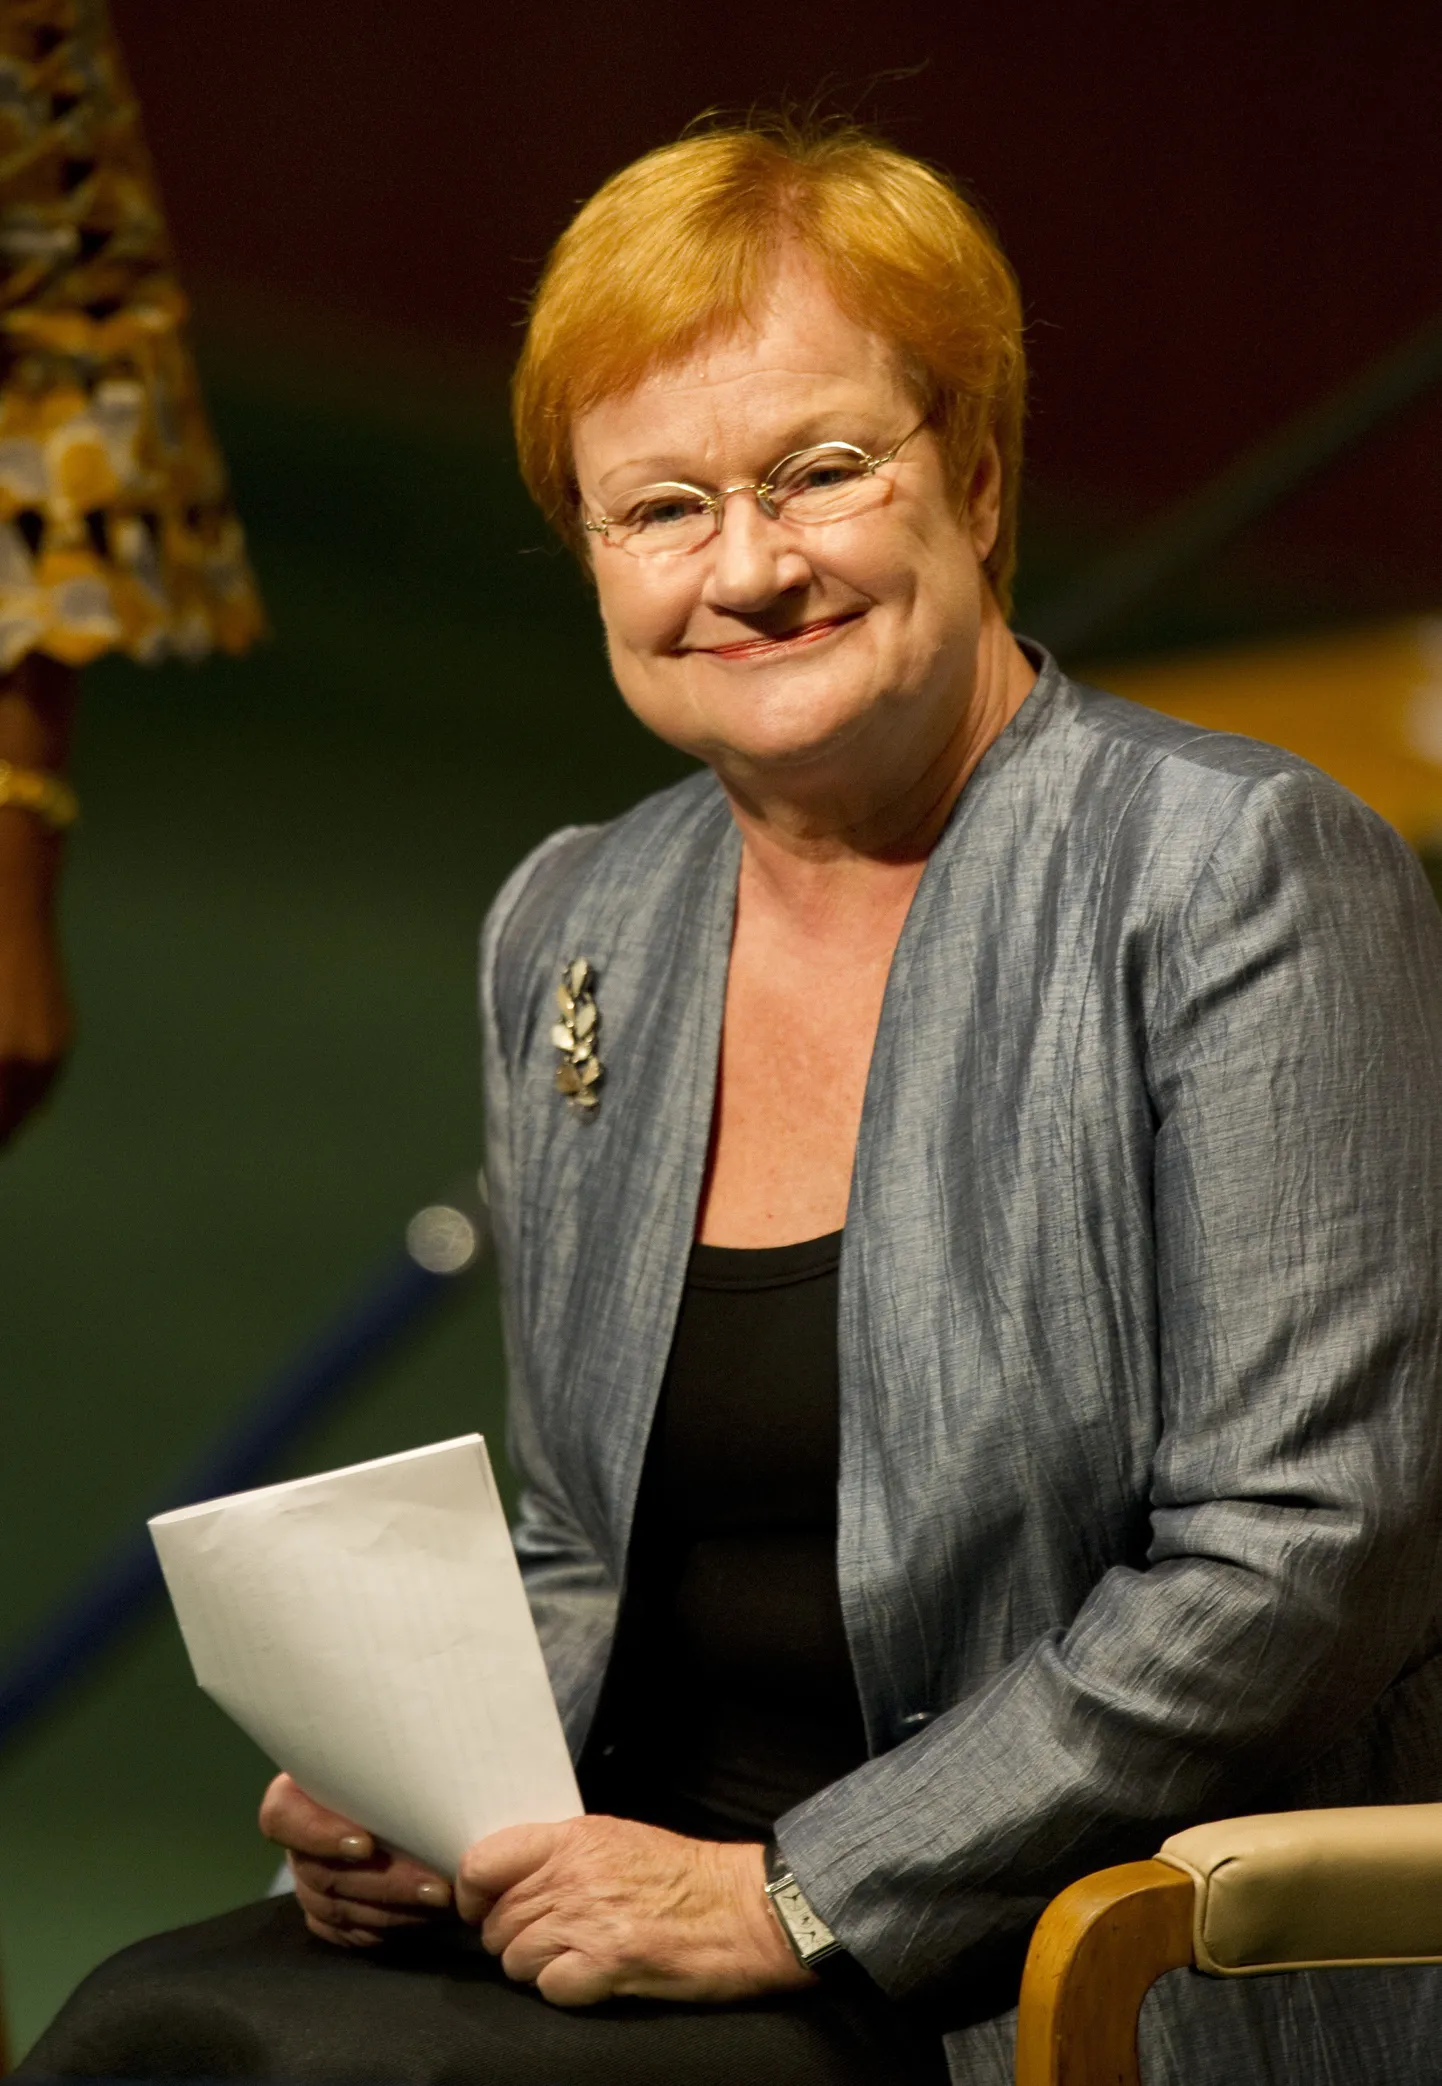 Soome endine president Tarja Halonen.